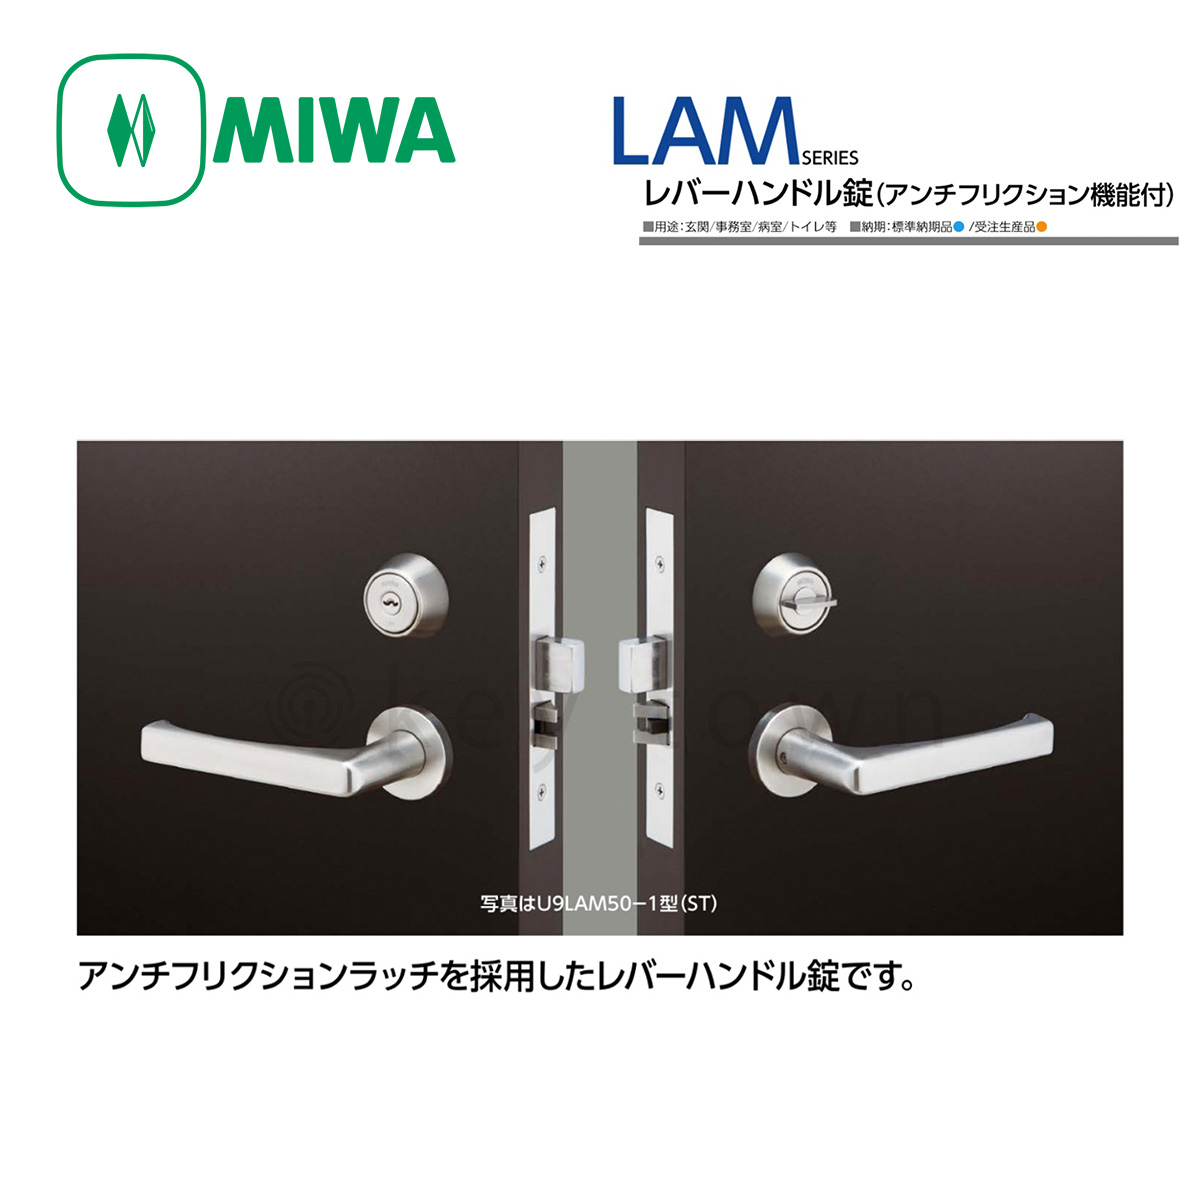 MIWA 【美和ロック】 レバーハンドル [MIWA-LAM] U9LAM50-1[MIWALAM